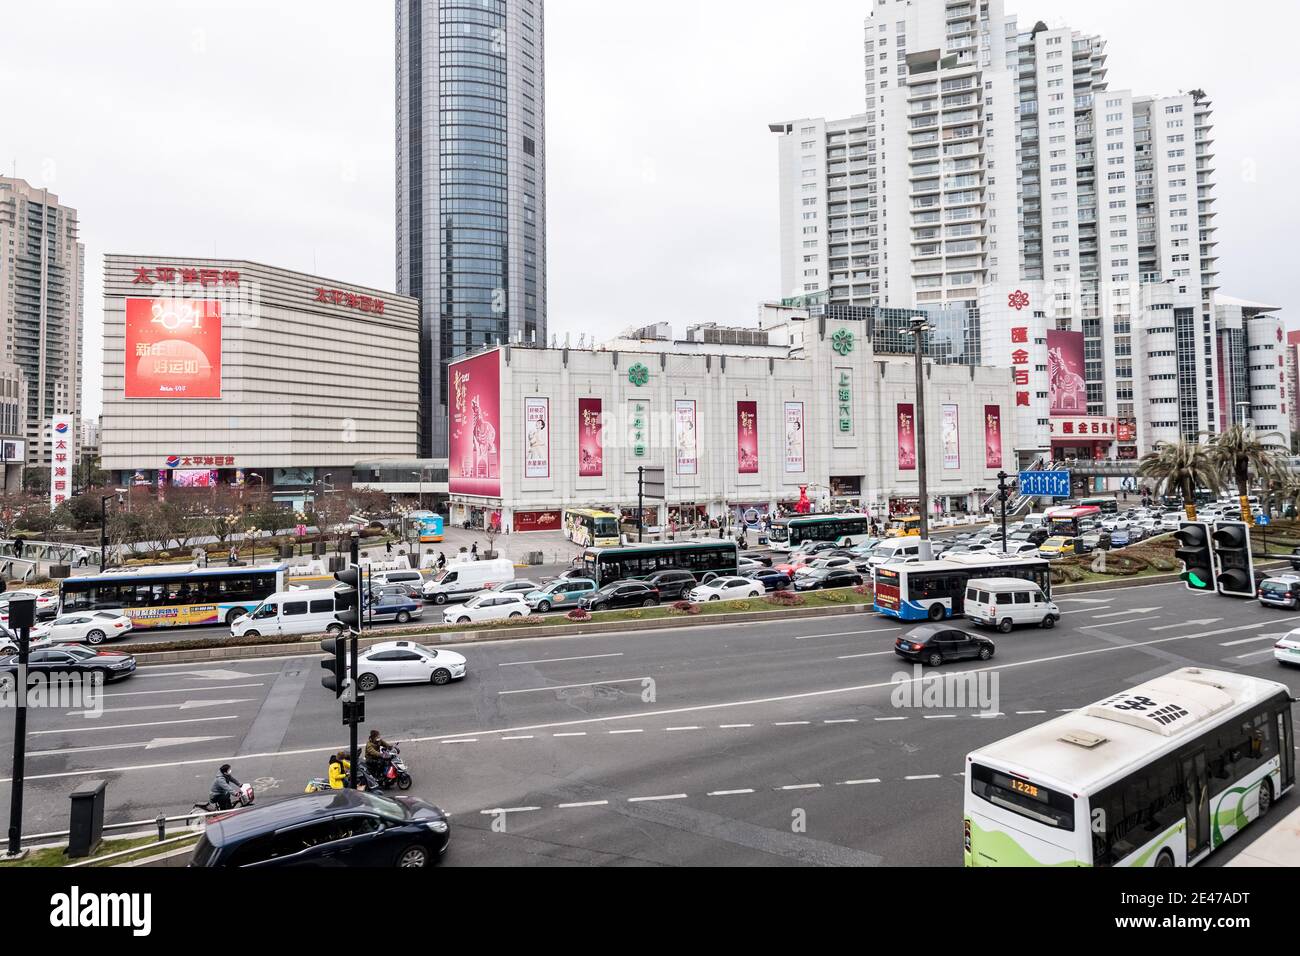 La vista exterior de Shanghai Liubai, un centro comercial local con una historia de 70 años, que será reconstruido con una inversión de 700 millones de Yuan (100 milli Foto de stock